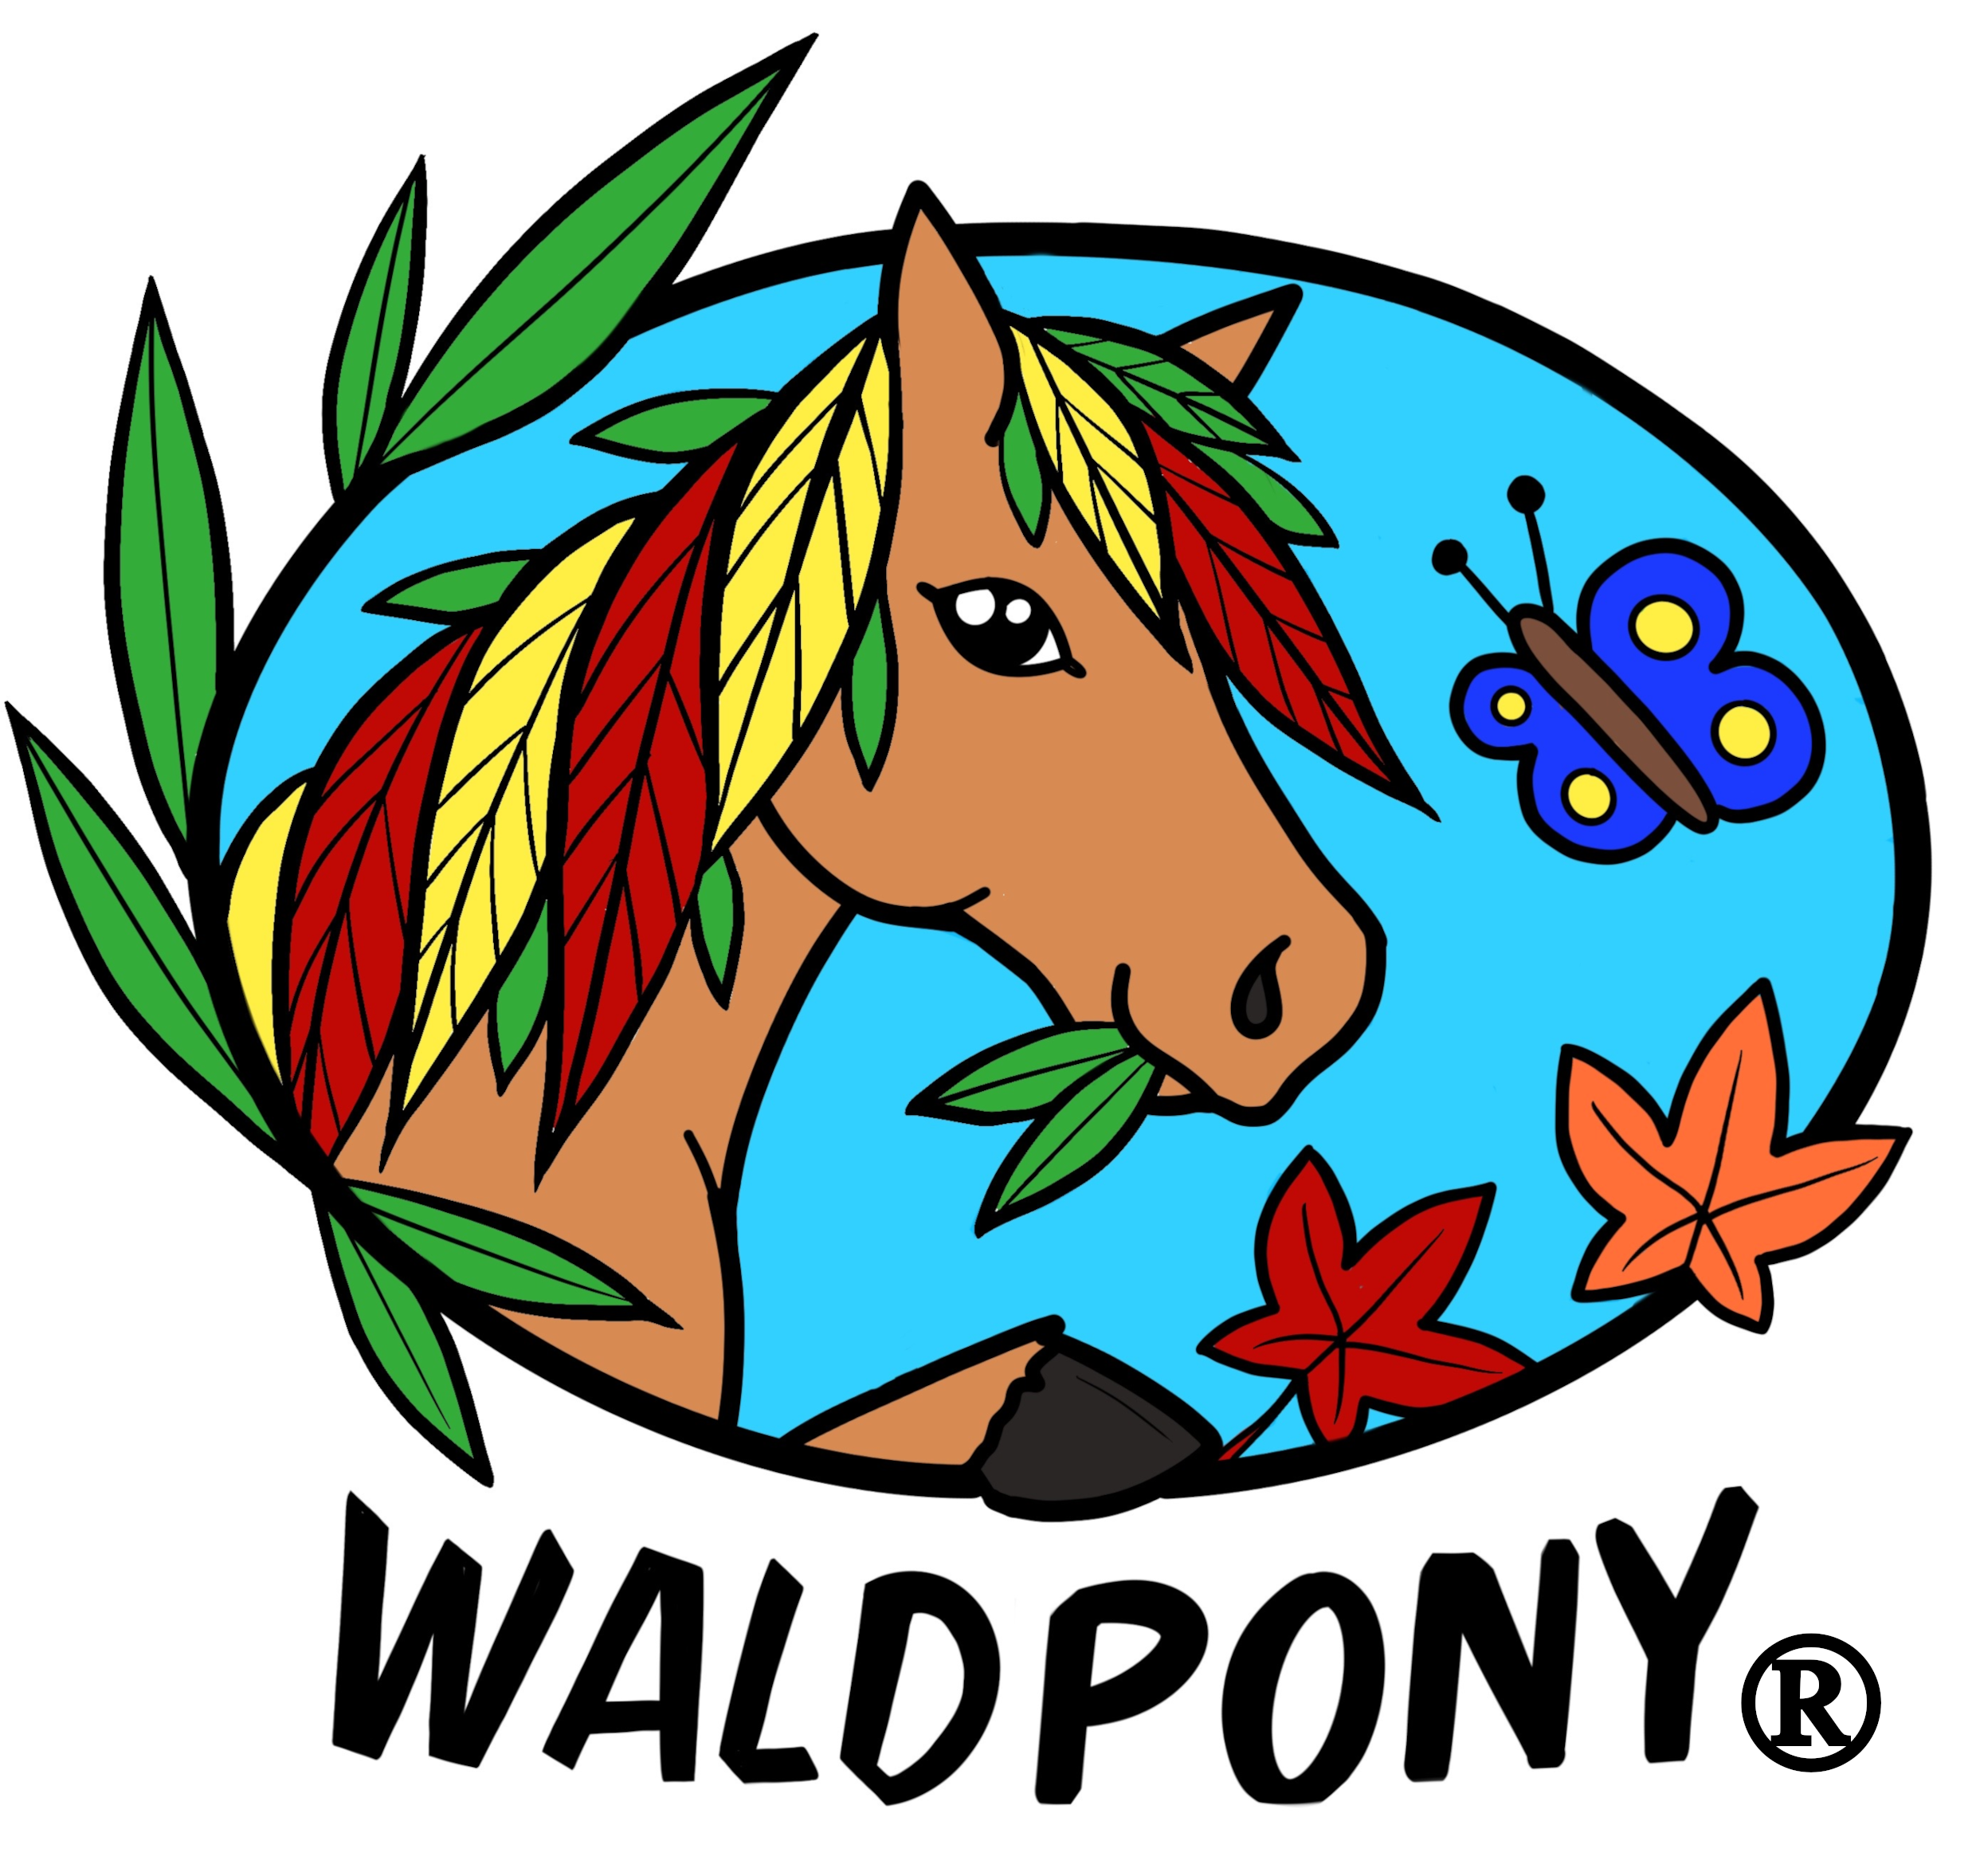 Waldpony